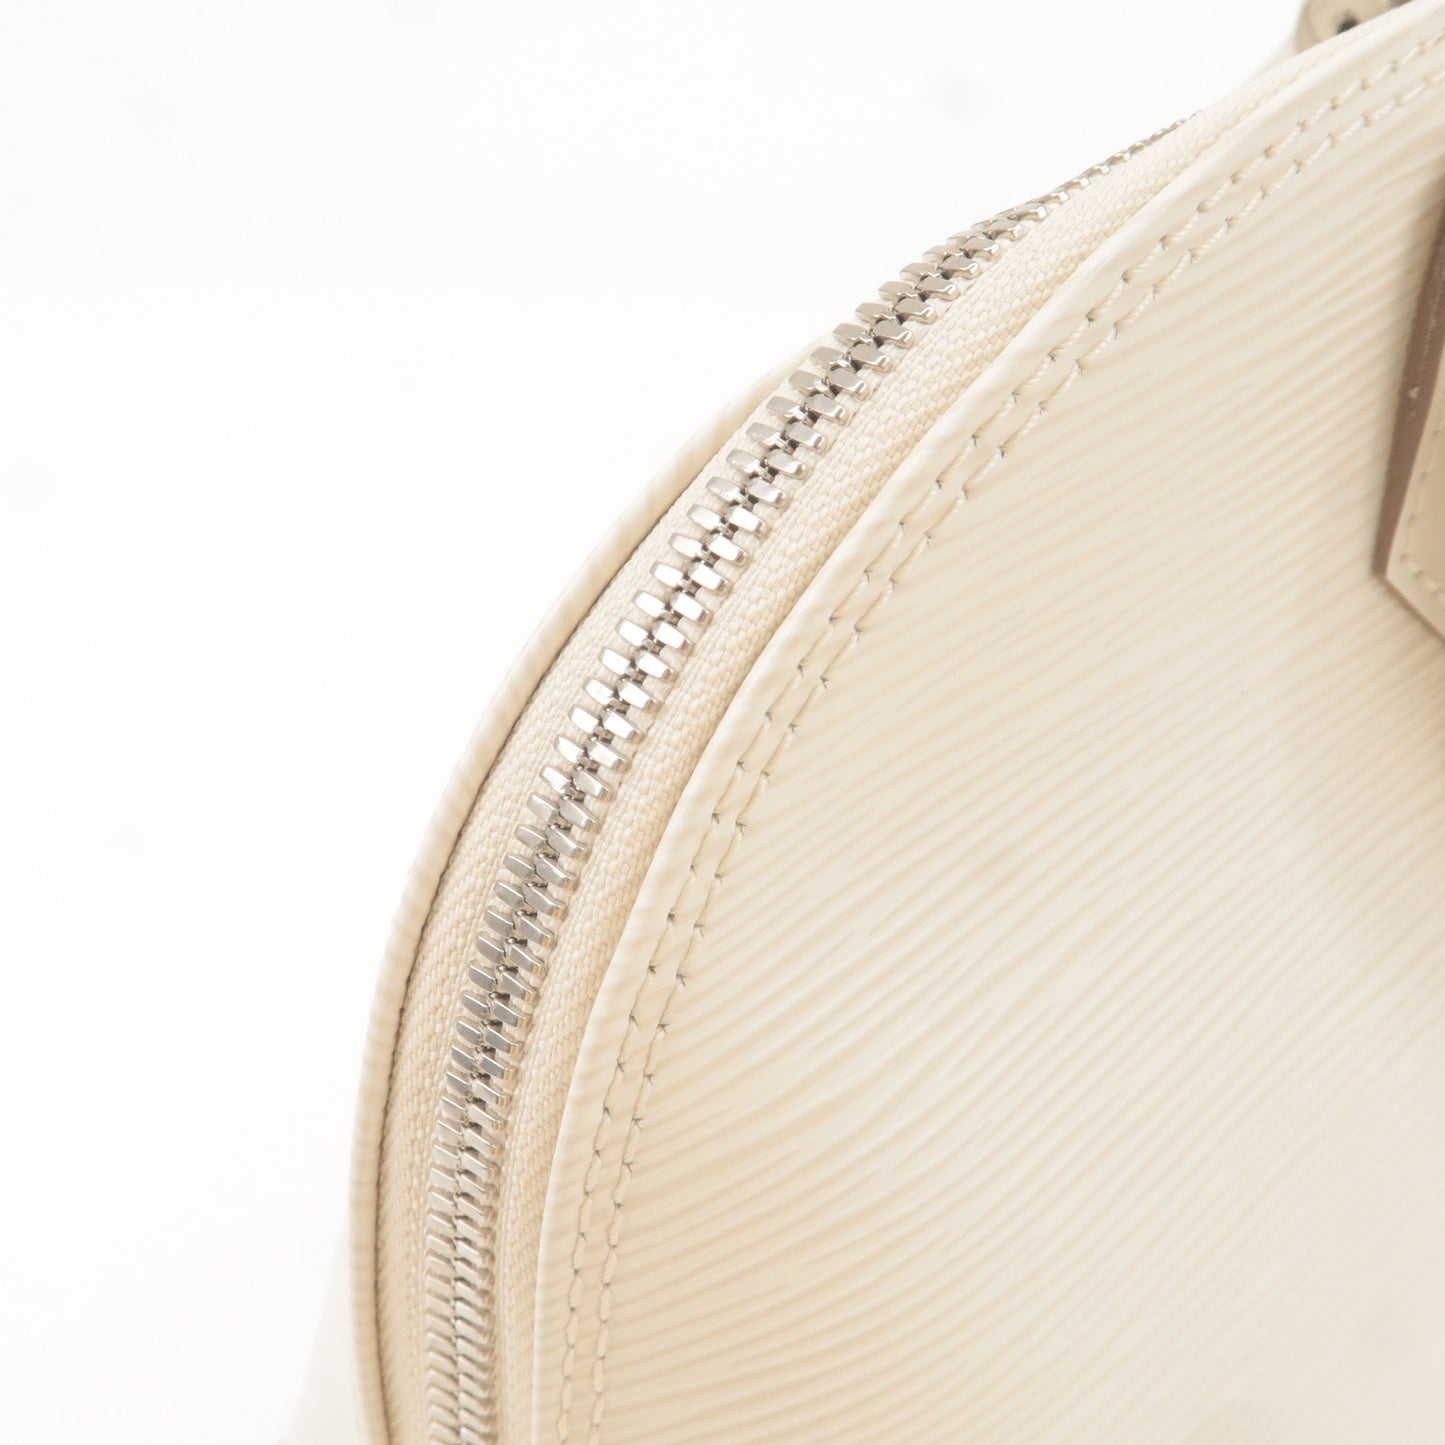 Louis Vuitton Ivoire Epi Leather Alma PM – FashionsZila